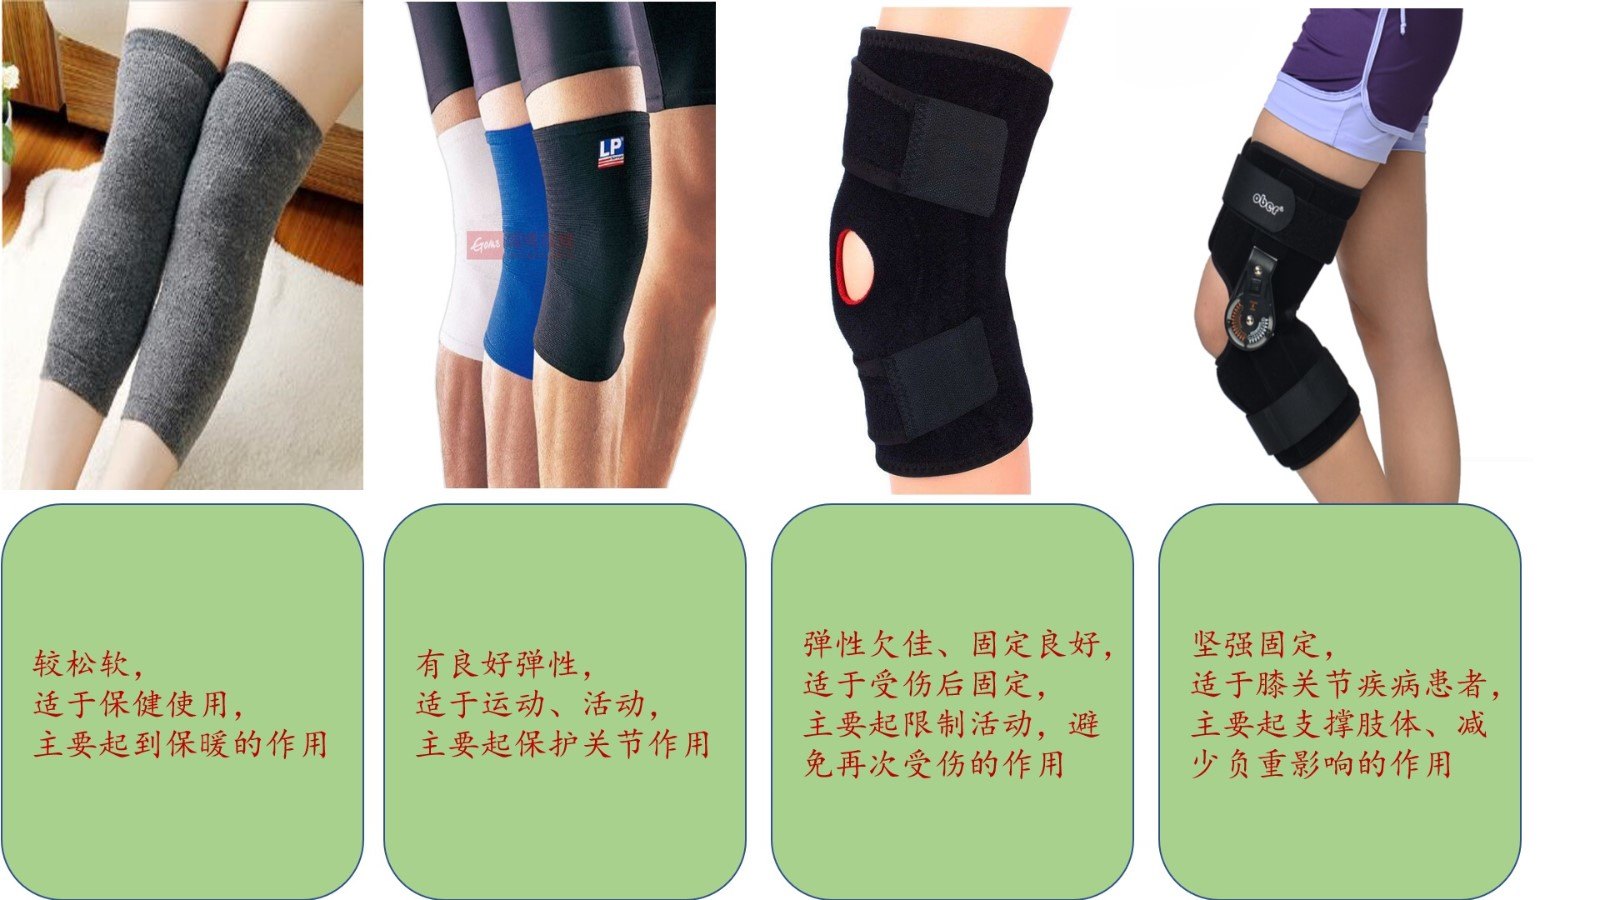 制动,增加关节保护性,膝关节是全身最复杂,使用非常频繁,活动范围较